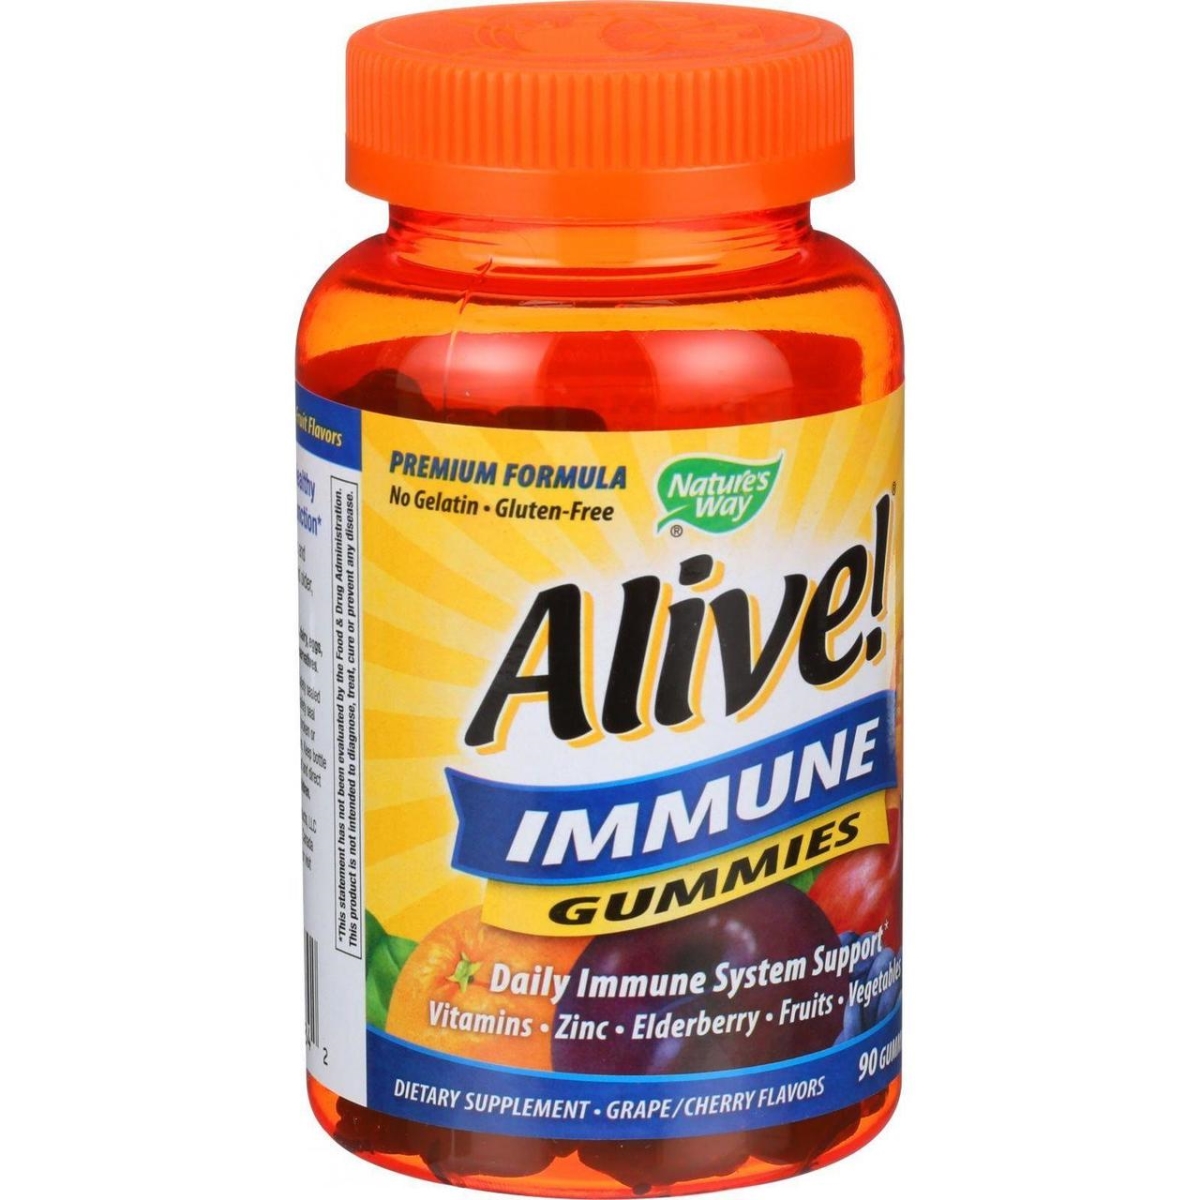 Hg1606839 Alive Immune Gummies - 90 Count